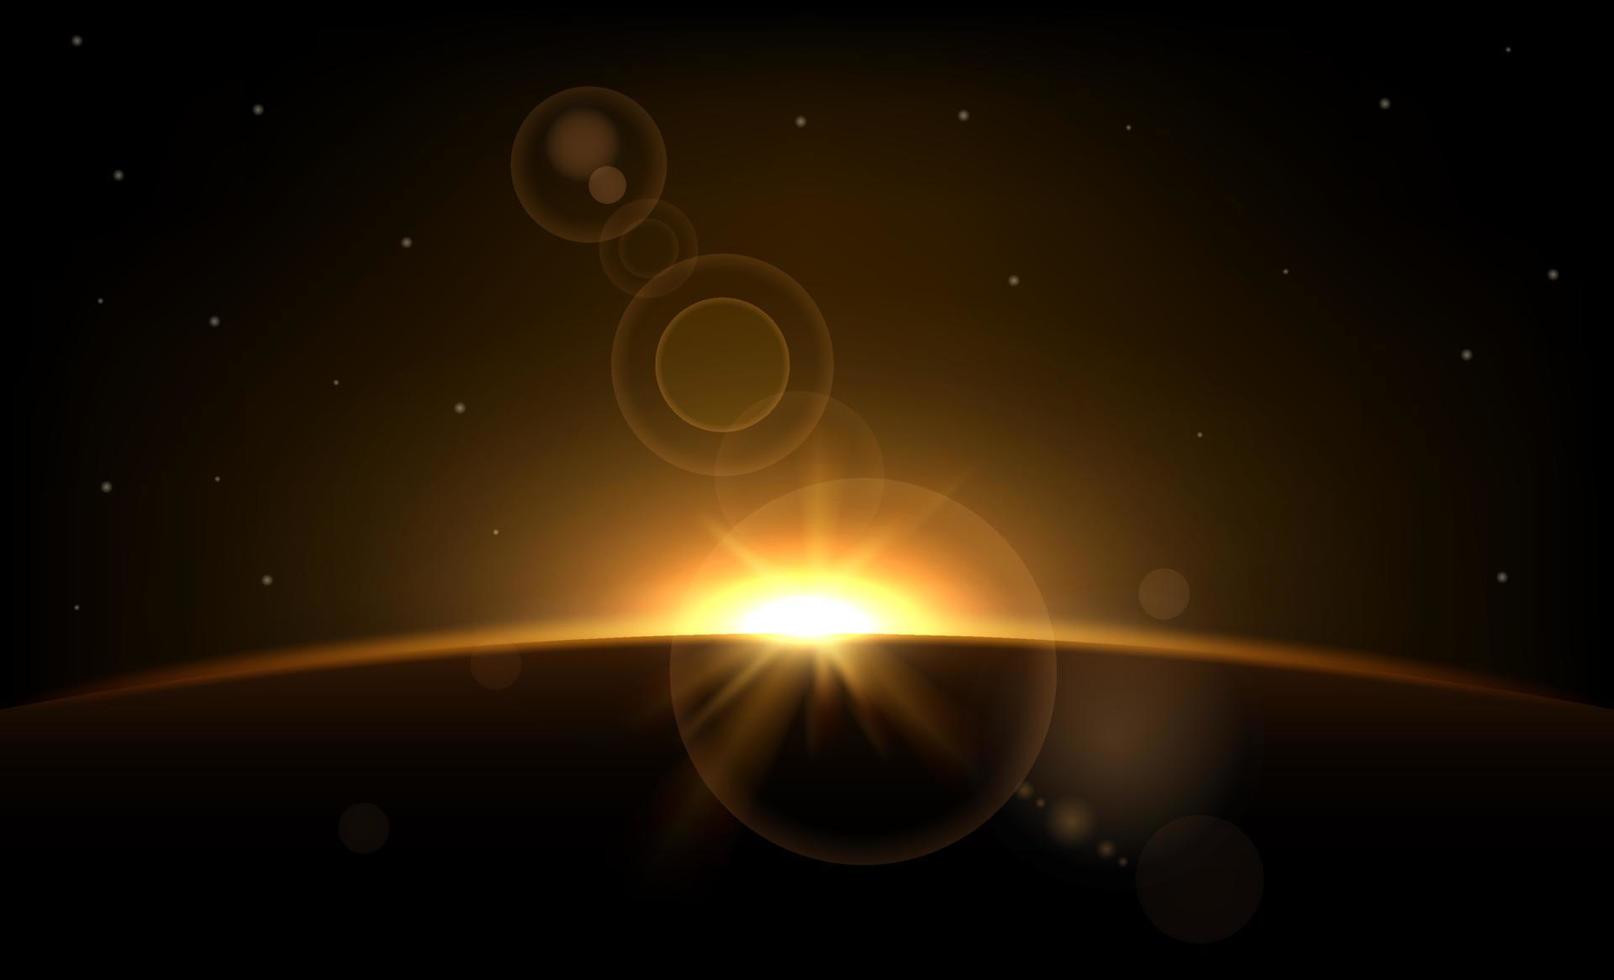 éclipse de soleil. anneau solaire sur fond sombre. planète avec les rayons du soleil. effet de lumière abstrait. lueur dorée dans l'espace. horizon terrestre avec des lumières. lever de soleil réaliste avec des reflets. illustration vectorielle. vecteur